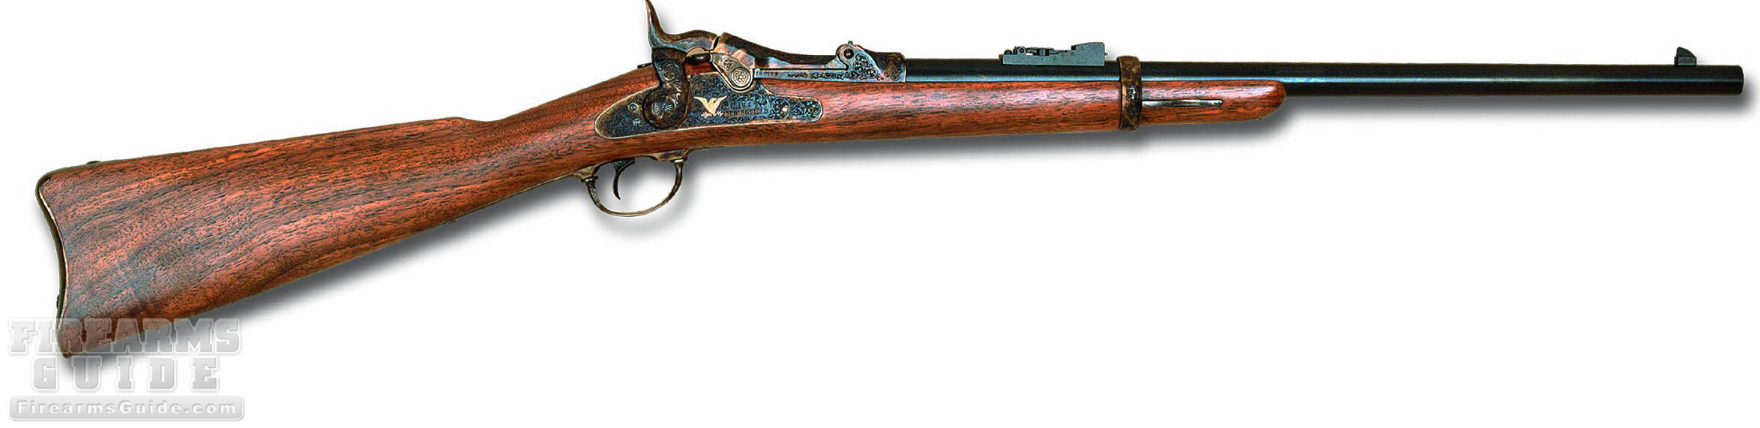 Pedersoli Springfield Trapdoor Rifle Extra DeLuxe